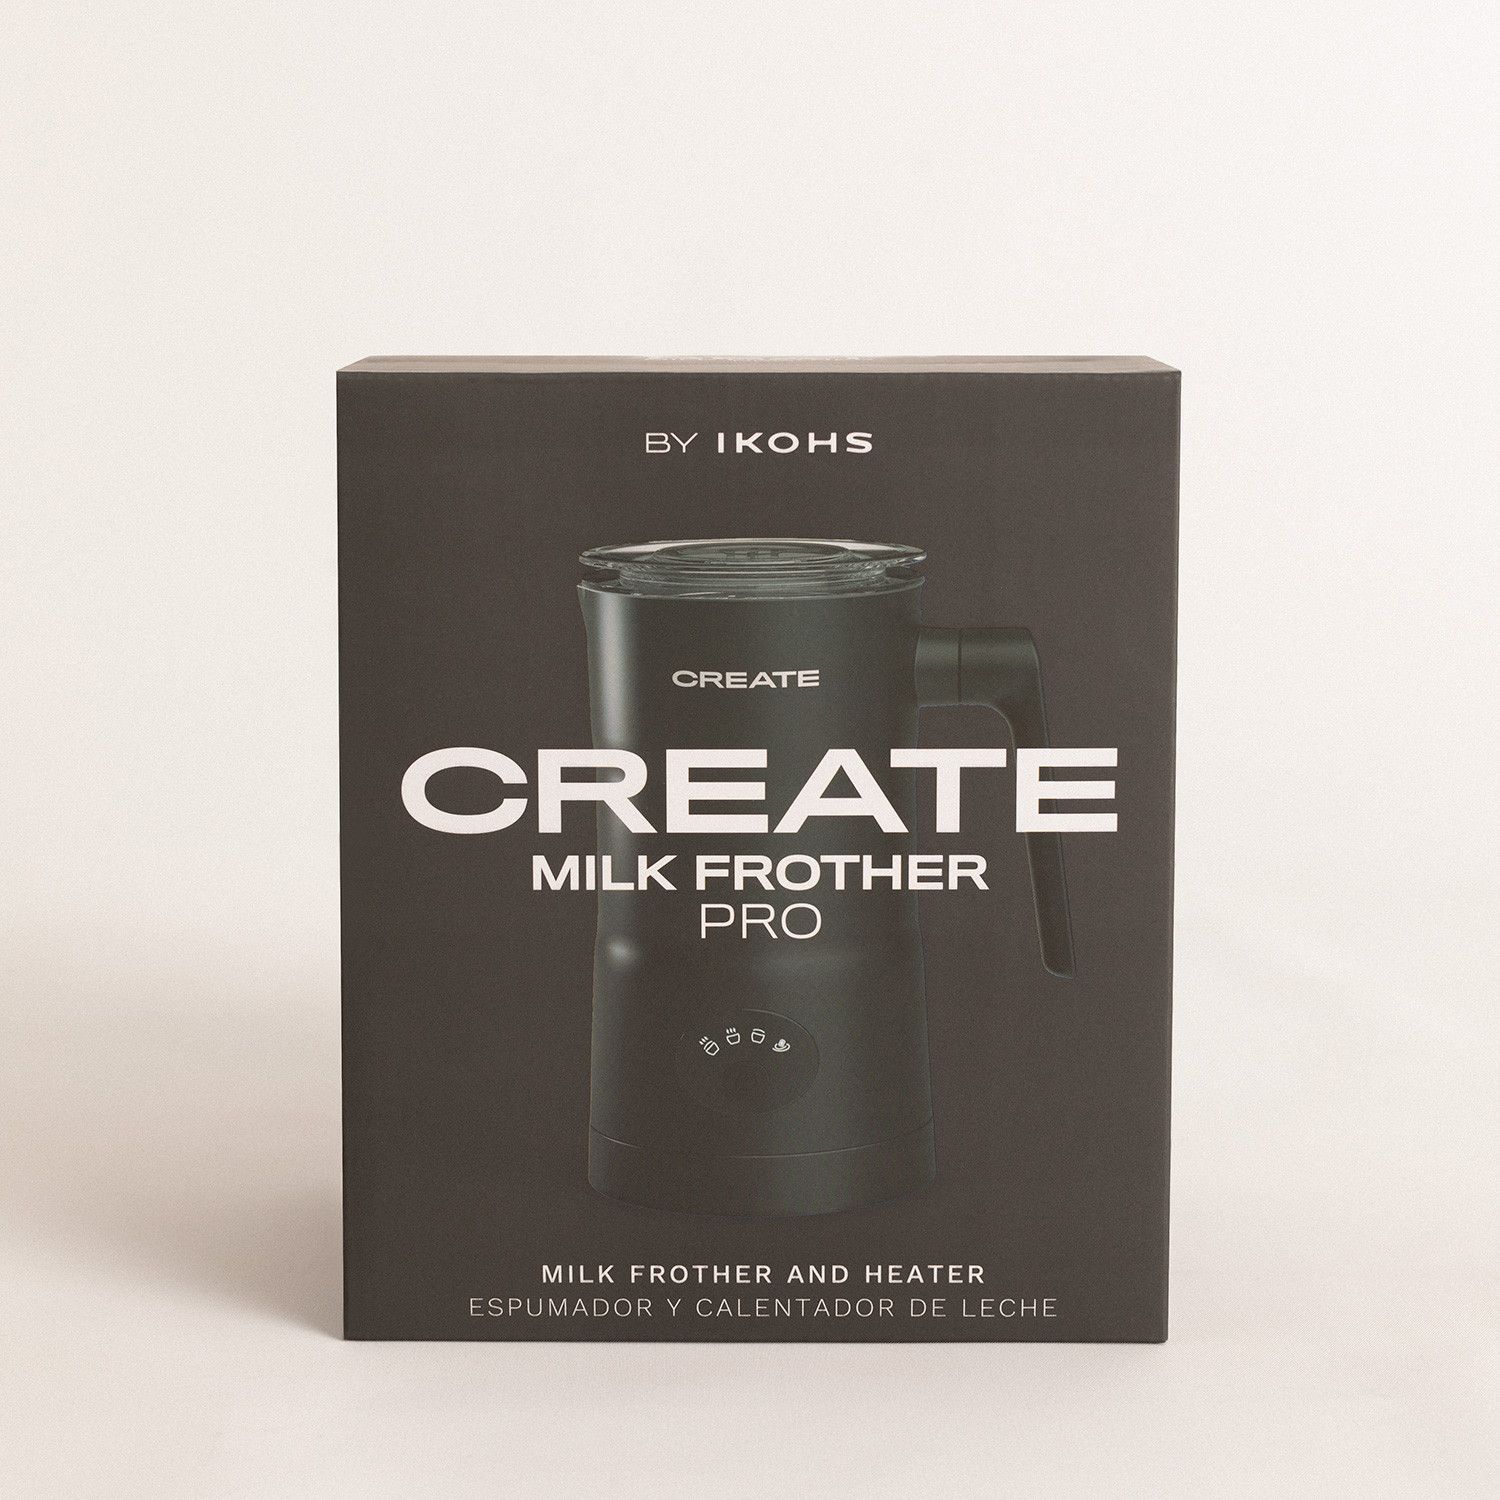 Espumador Y Calentador De Leche Milk Frother Pro Gris Create